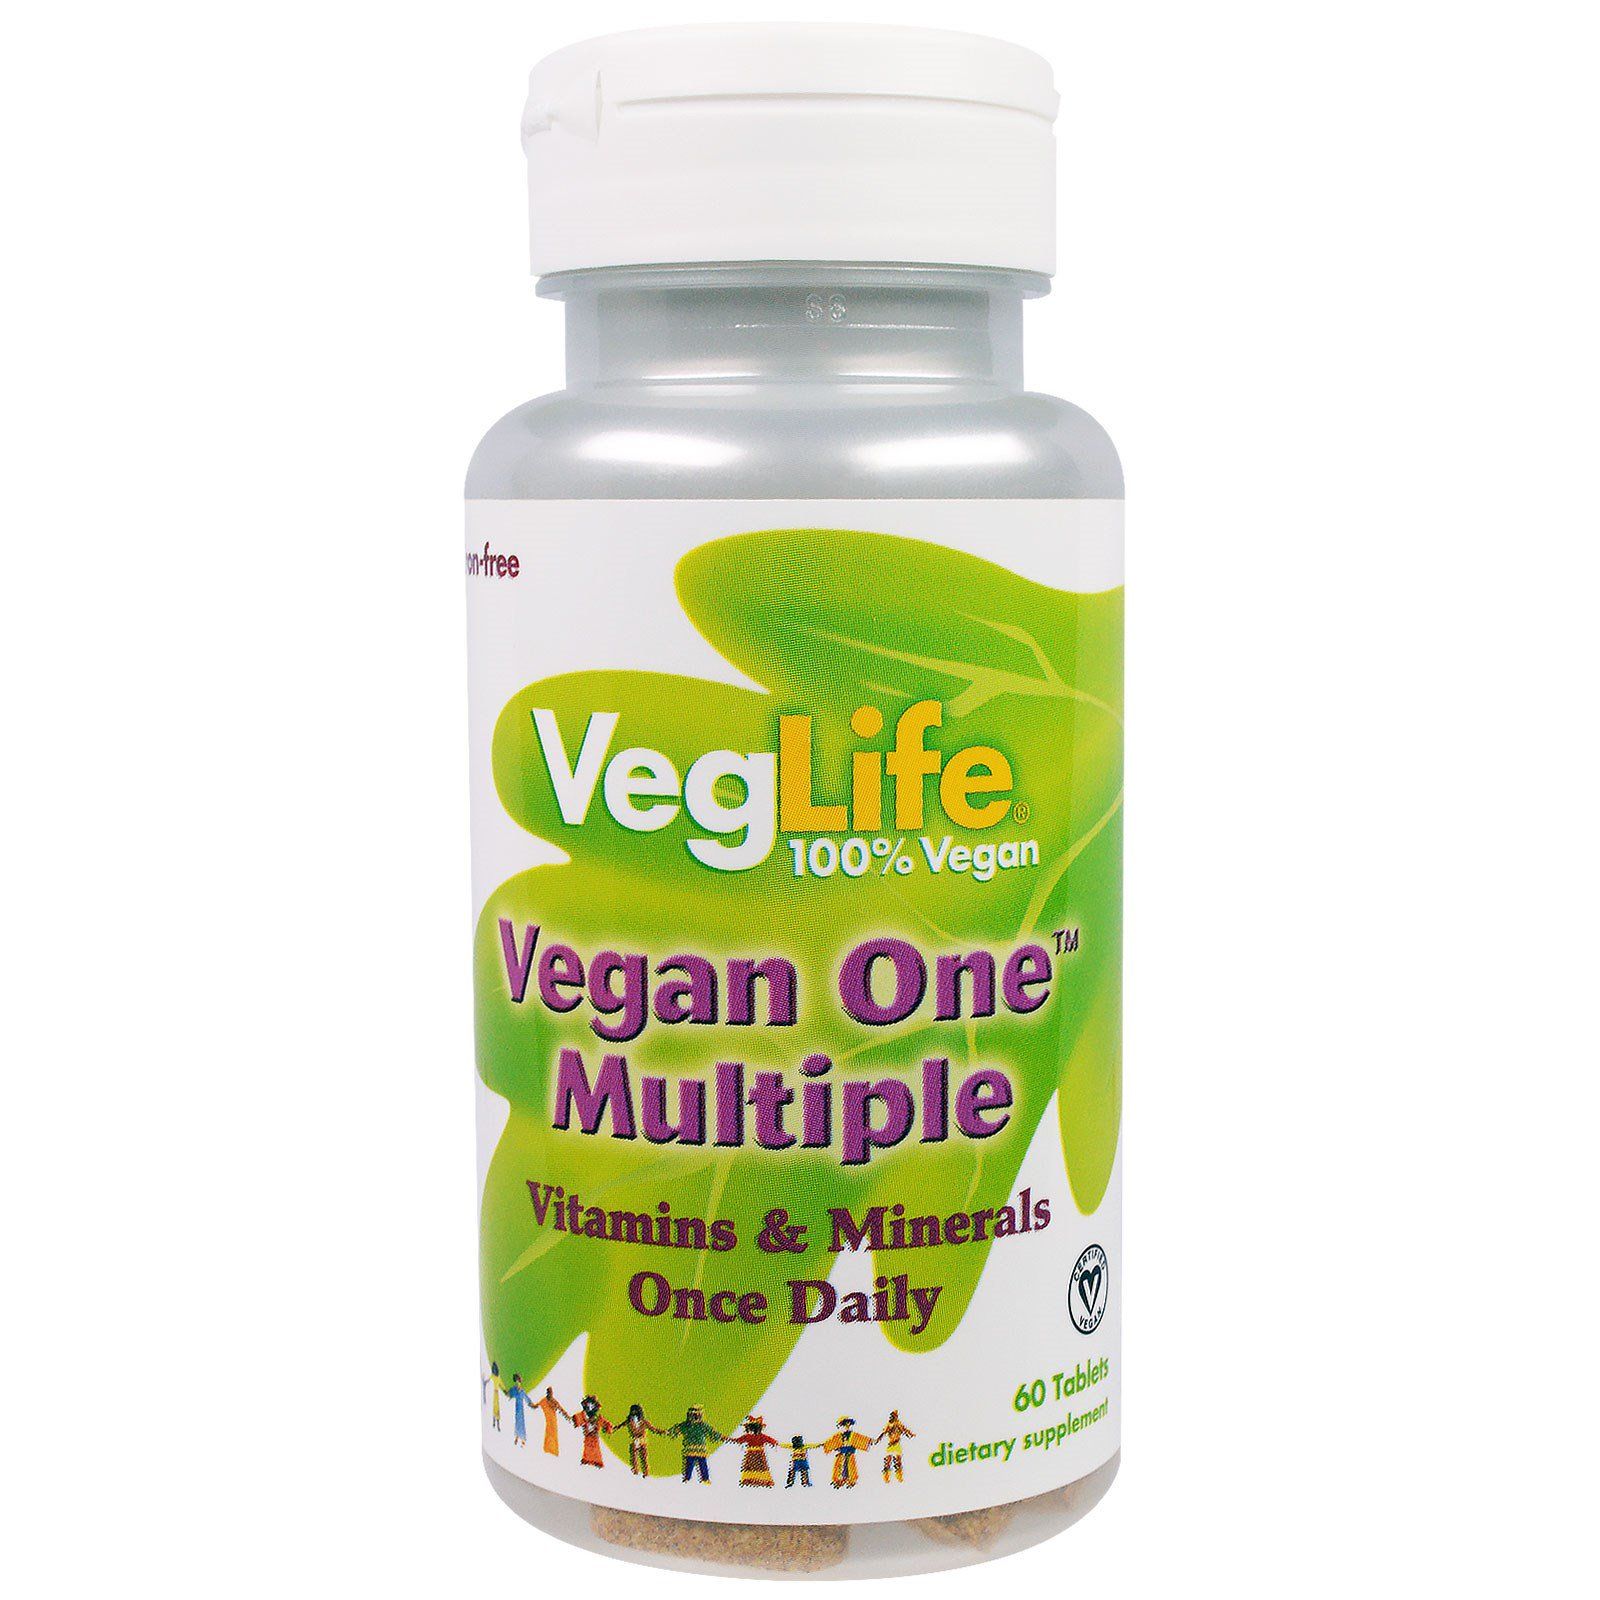 VegLife Vegan One мультивитамины растительного происхождения без железа 60 таблеток